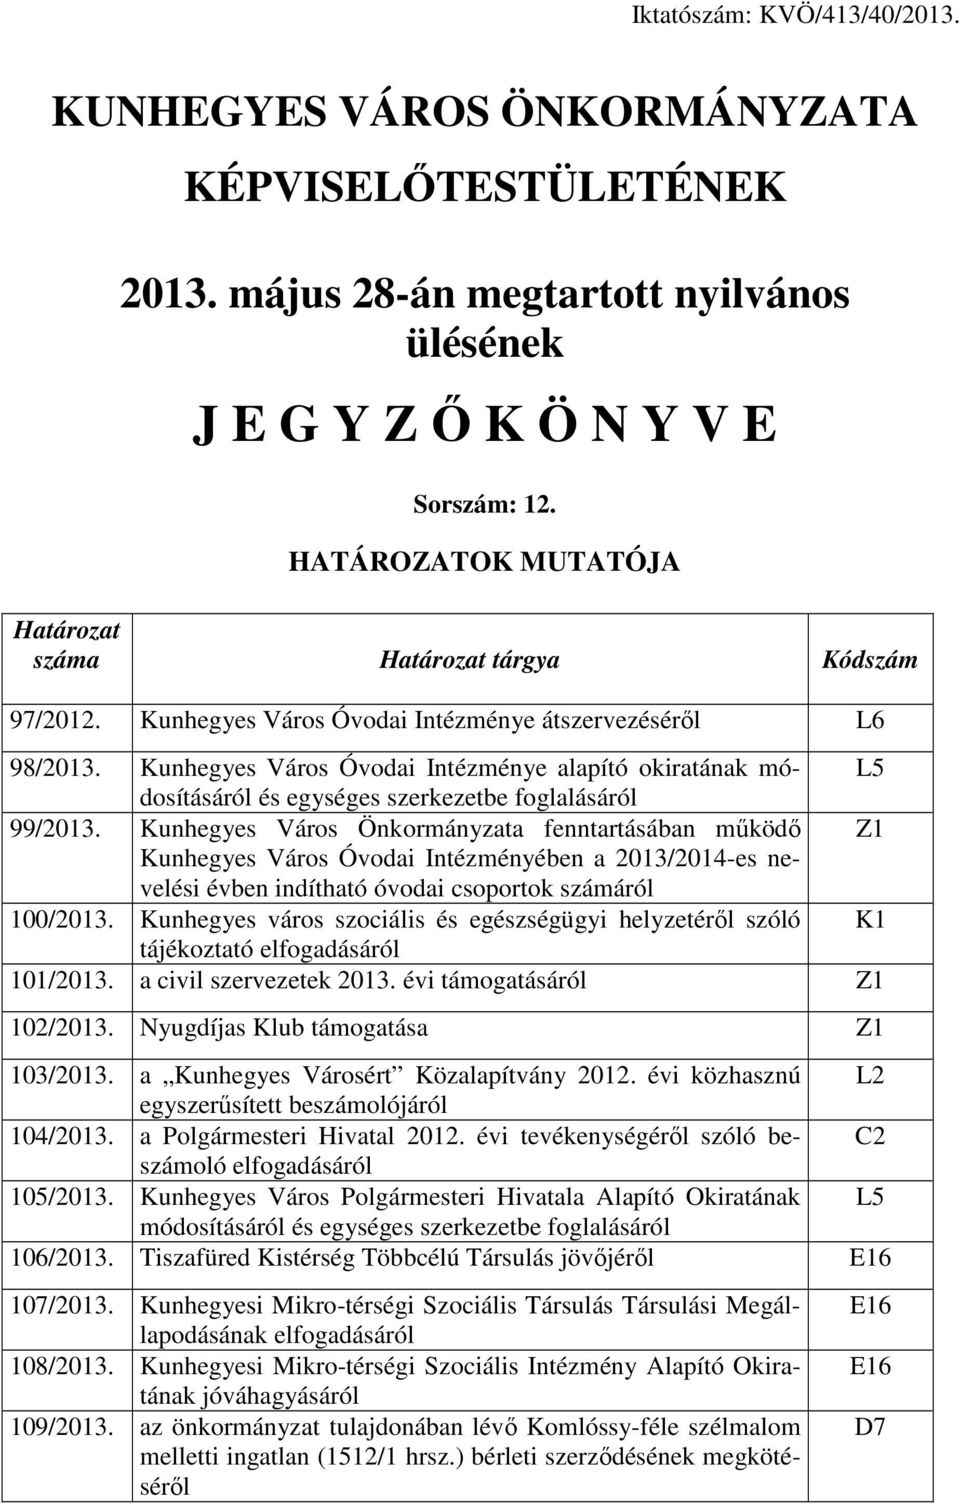 Kunhegyes Város Óvodai Intézménye alapító okiratának módosításáról L5 és egységes szerkezetbe foglalásáról 99/2013.